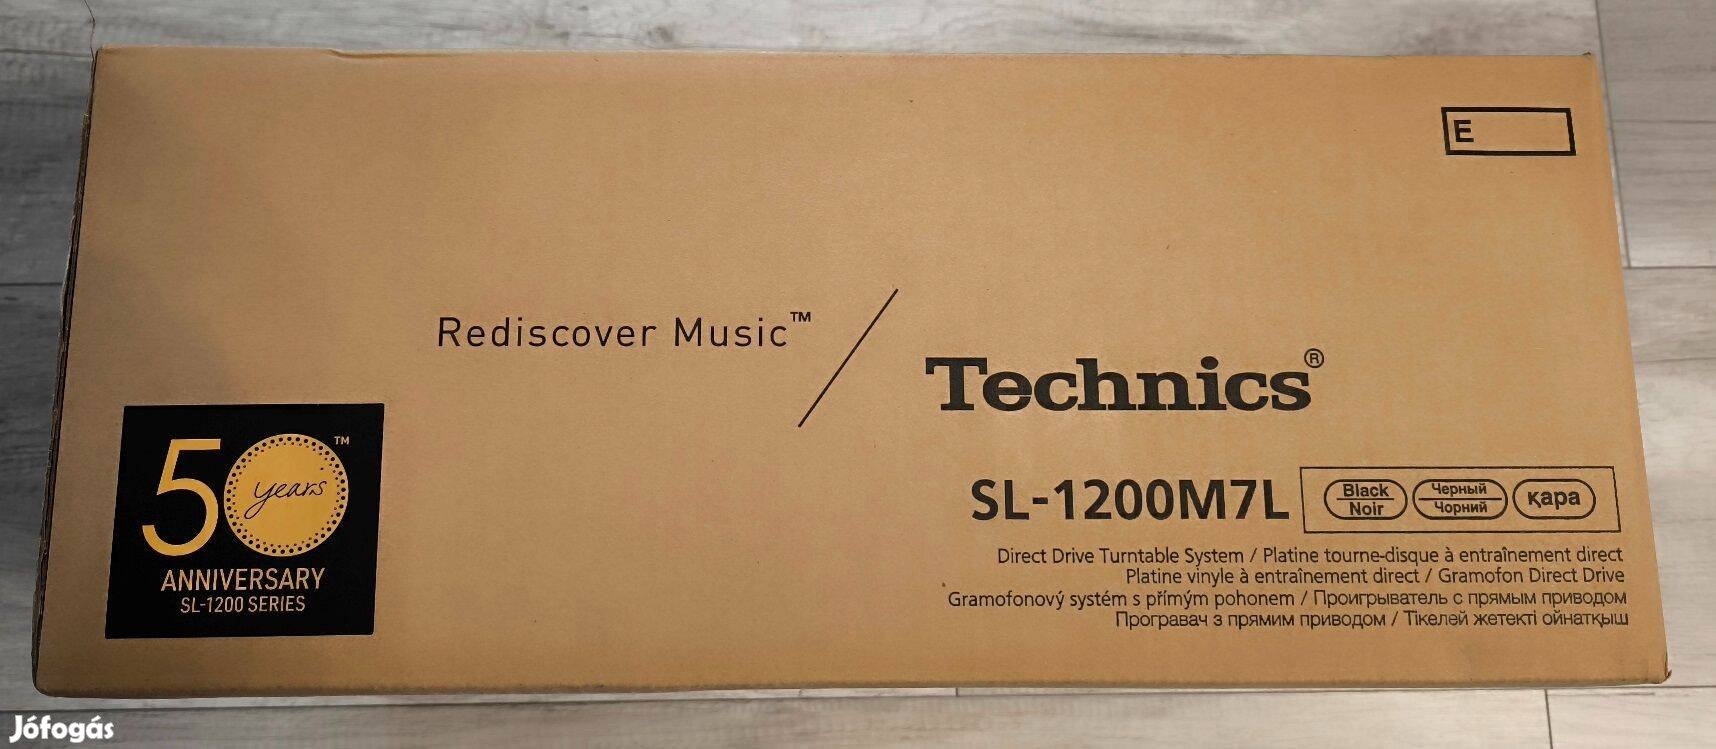 Technics SL-1200M7L DJ lemezjátszó, Limited Edition, bontatlan!